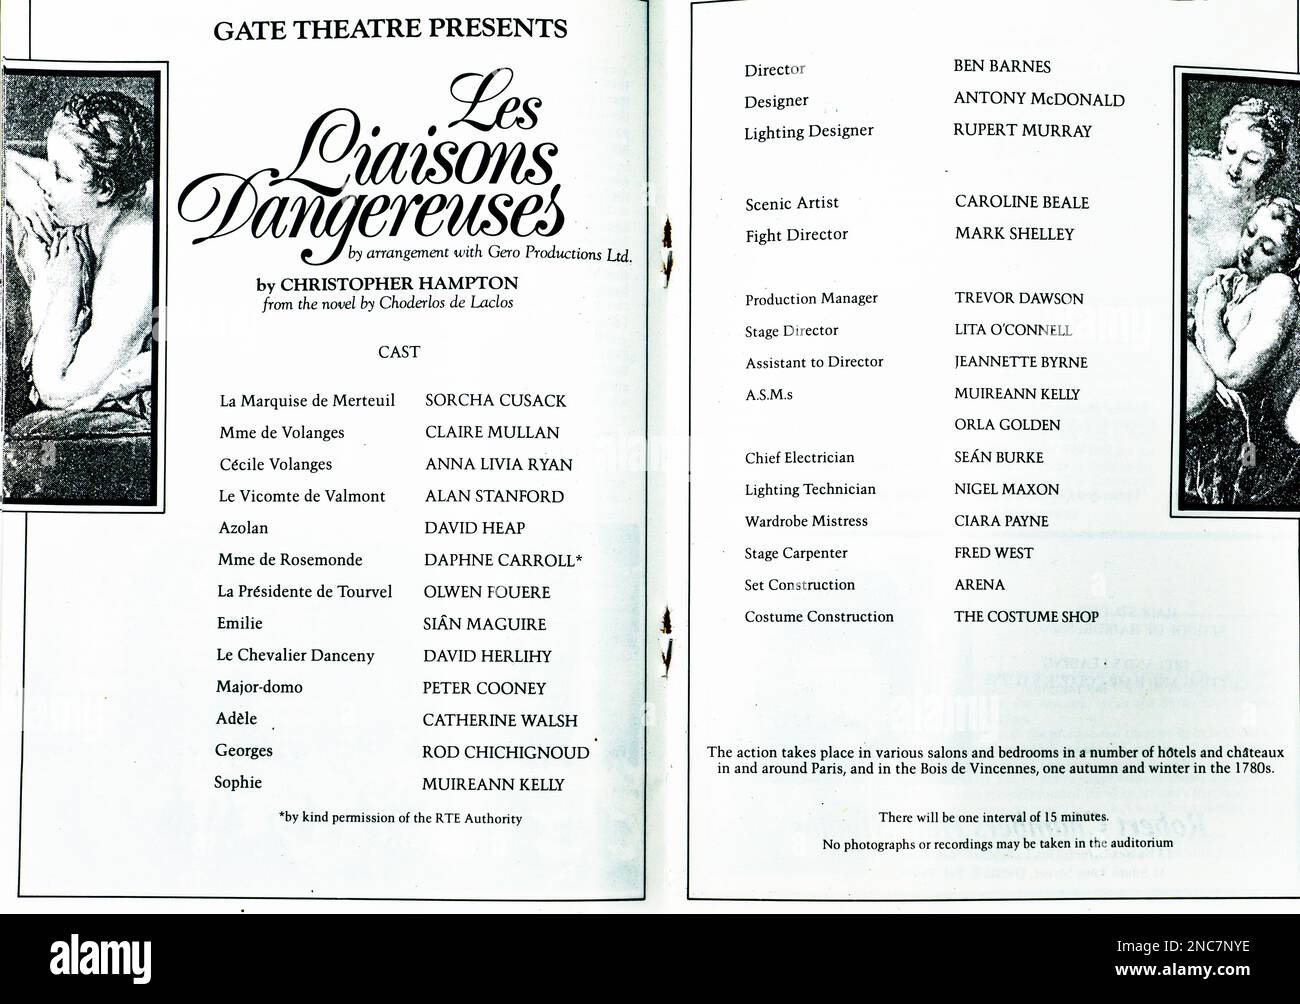 Die Schauspielliste für die Produktion von Les Liaisons Dangereuses 1987 von Christopher Hampton im Gate Theatre, Dublin, Irland. Direktor Ben Barnes. Stockfoto